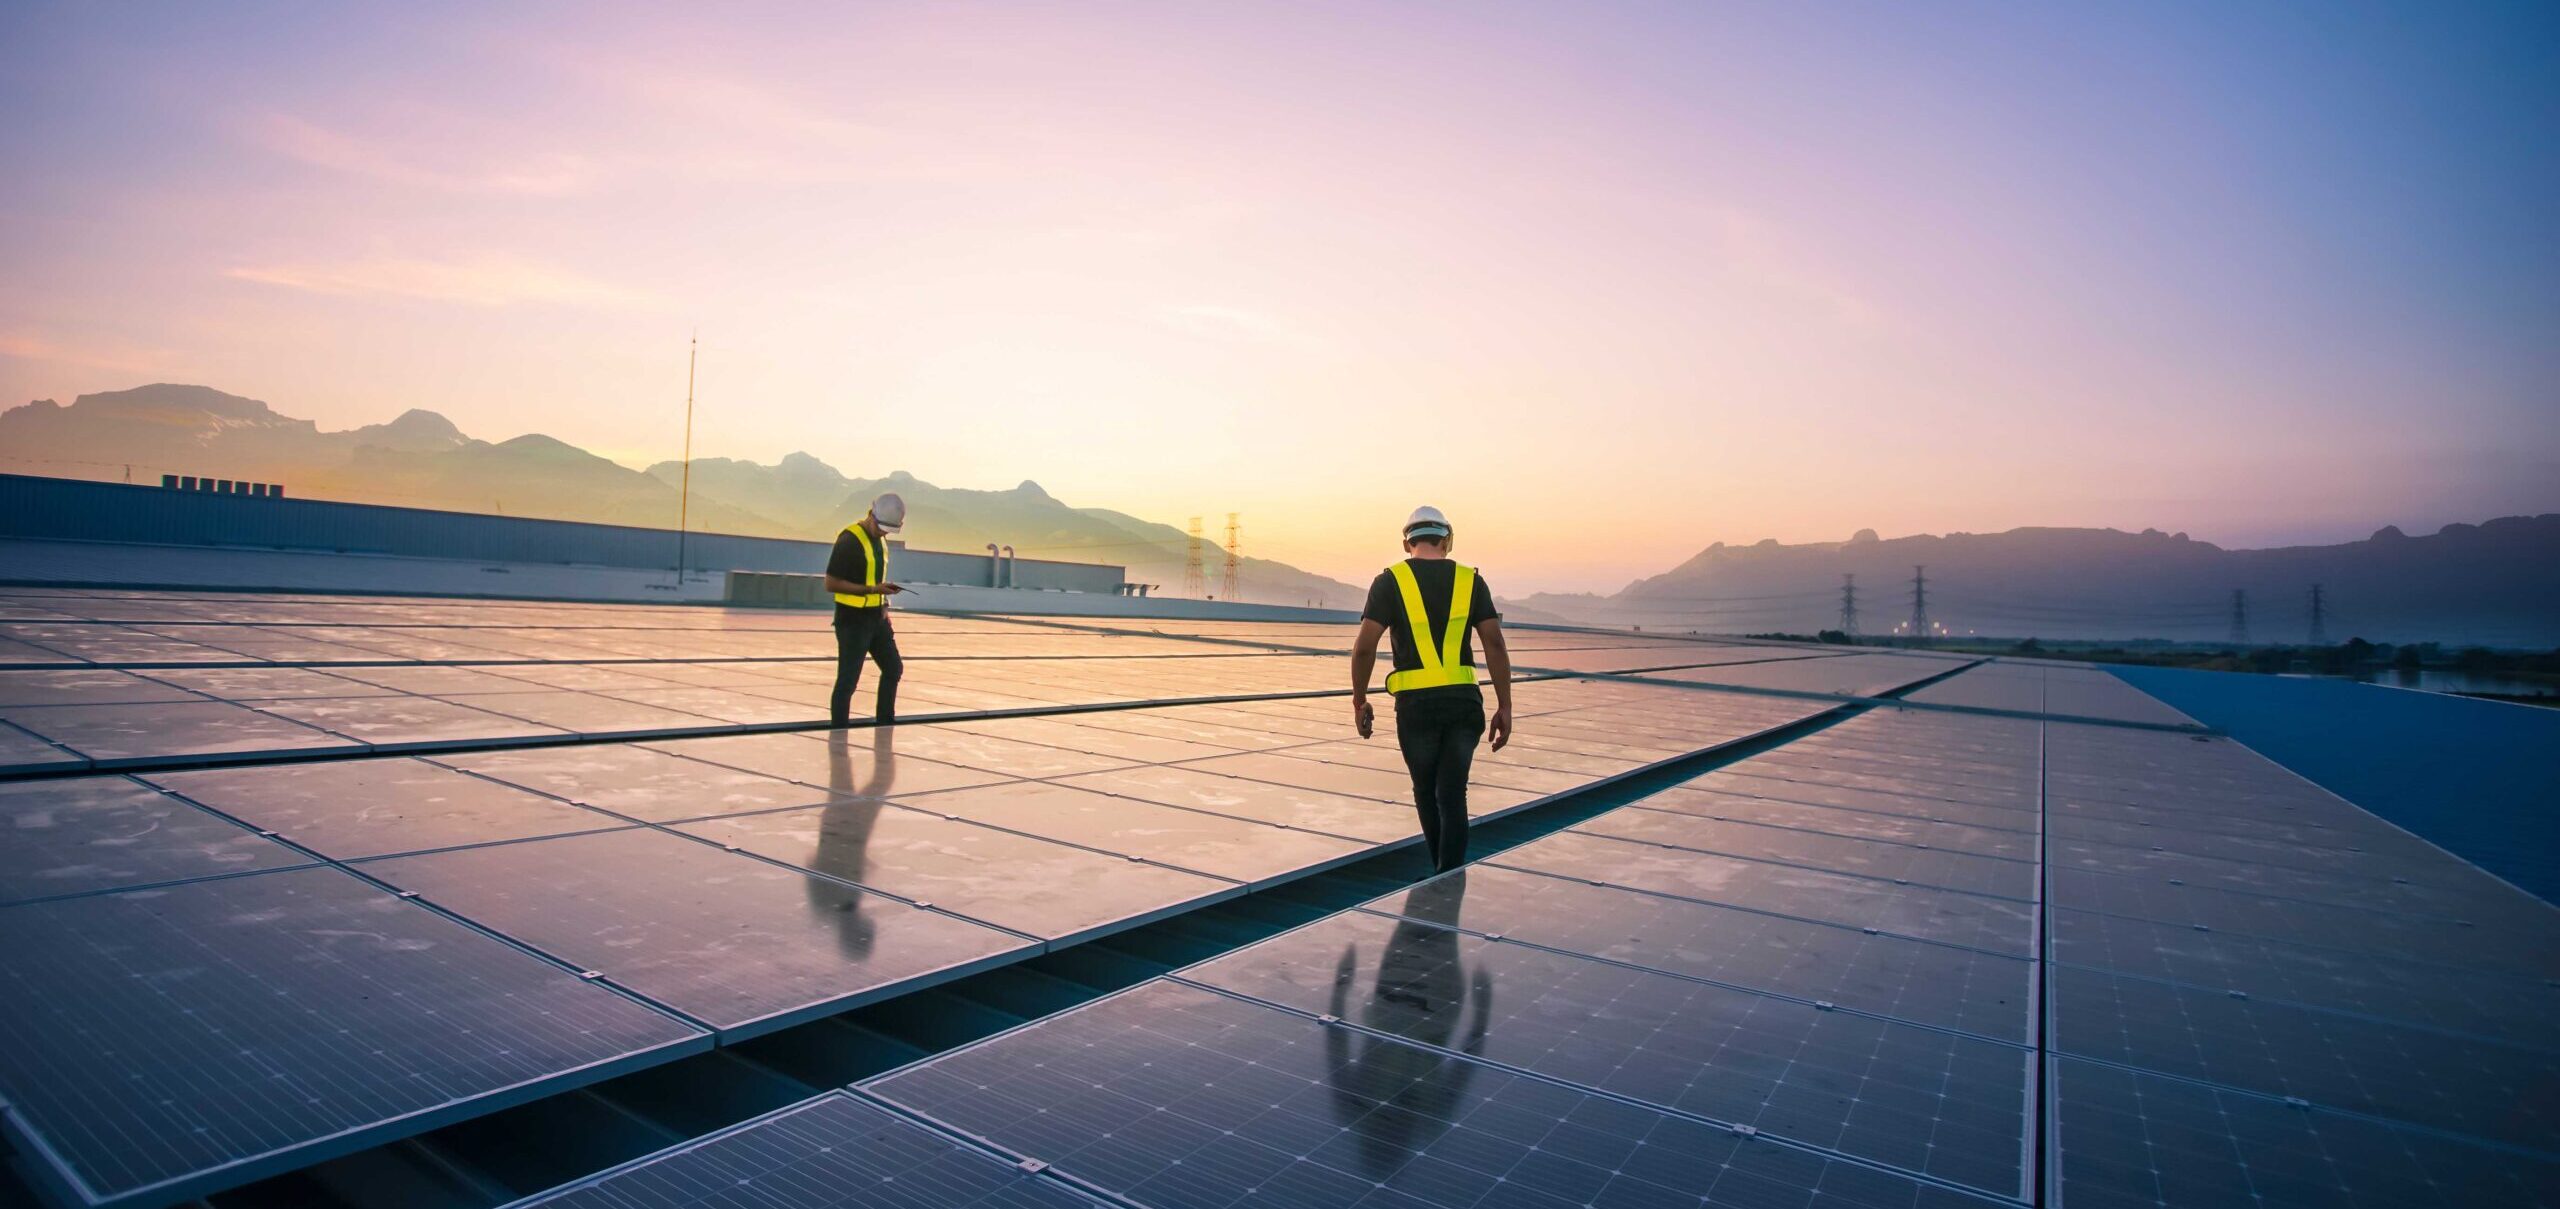 Solar­genossen­schaft ist enttäuscht vom Einknicken der Regierung